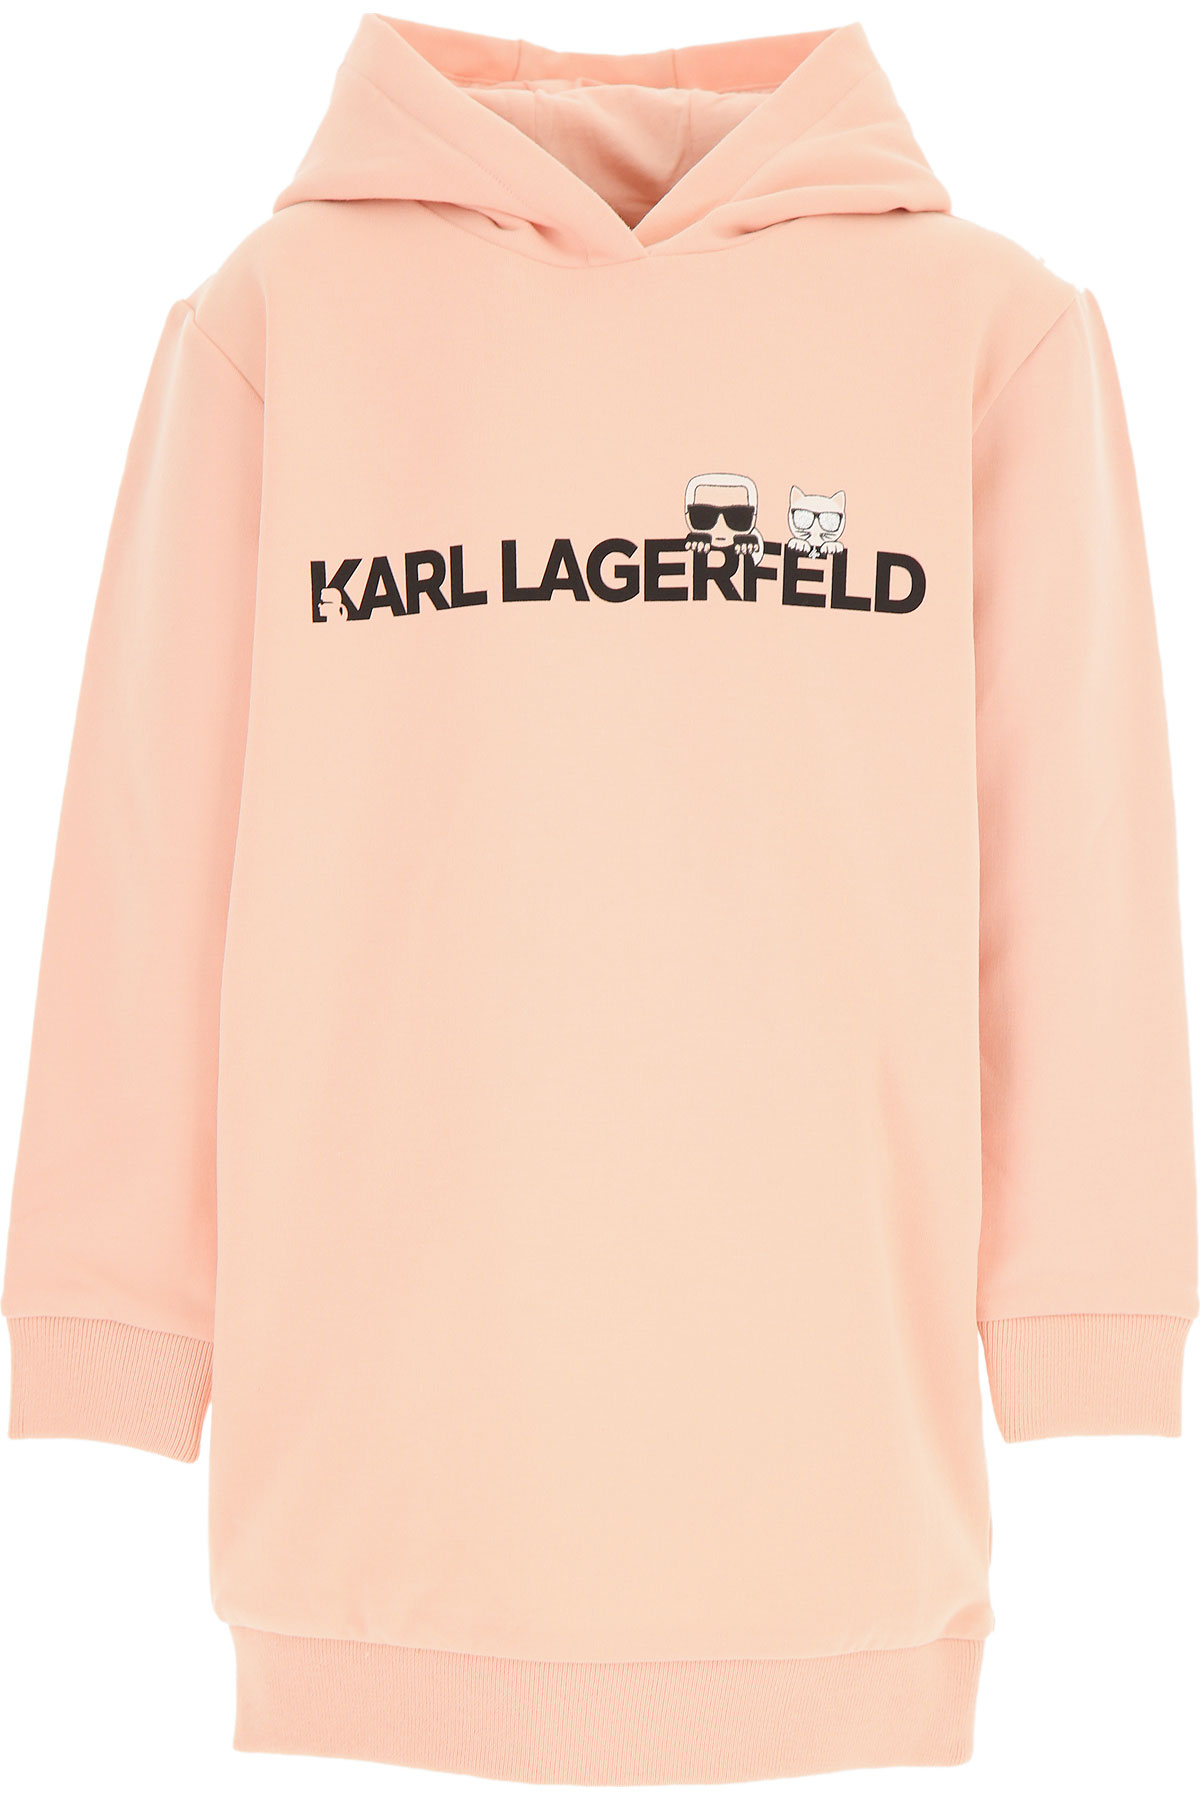 Karl Lagerfeld Kinder Sweatshirt & Kapuzenpullover für Mädchen Günstig im Sale, Pink, Baumwolle, 2017, 10Y 12Y 14Y 16Y 8Y